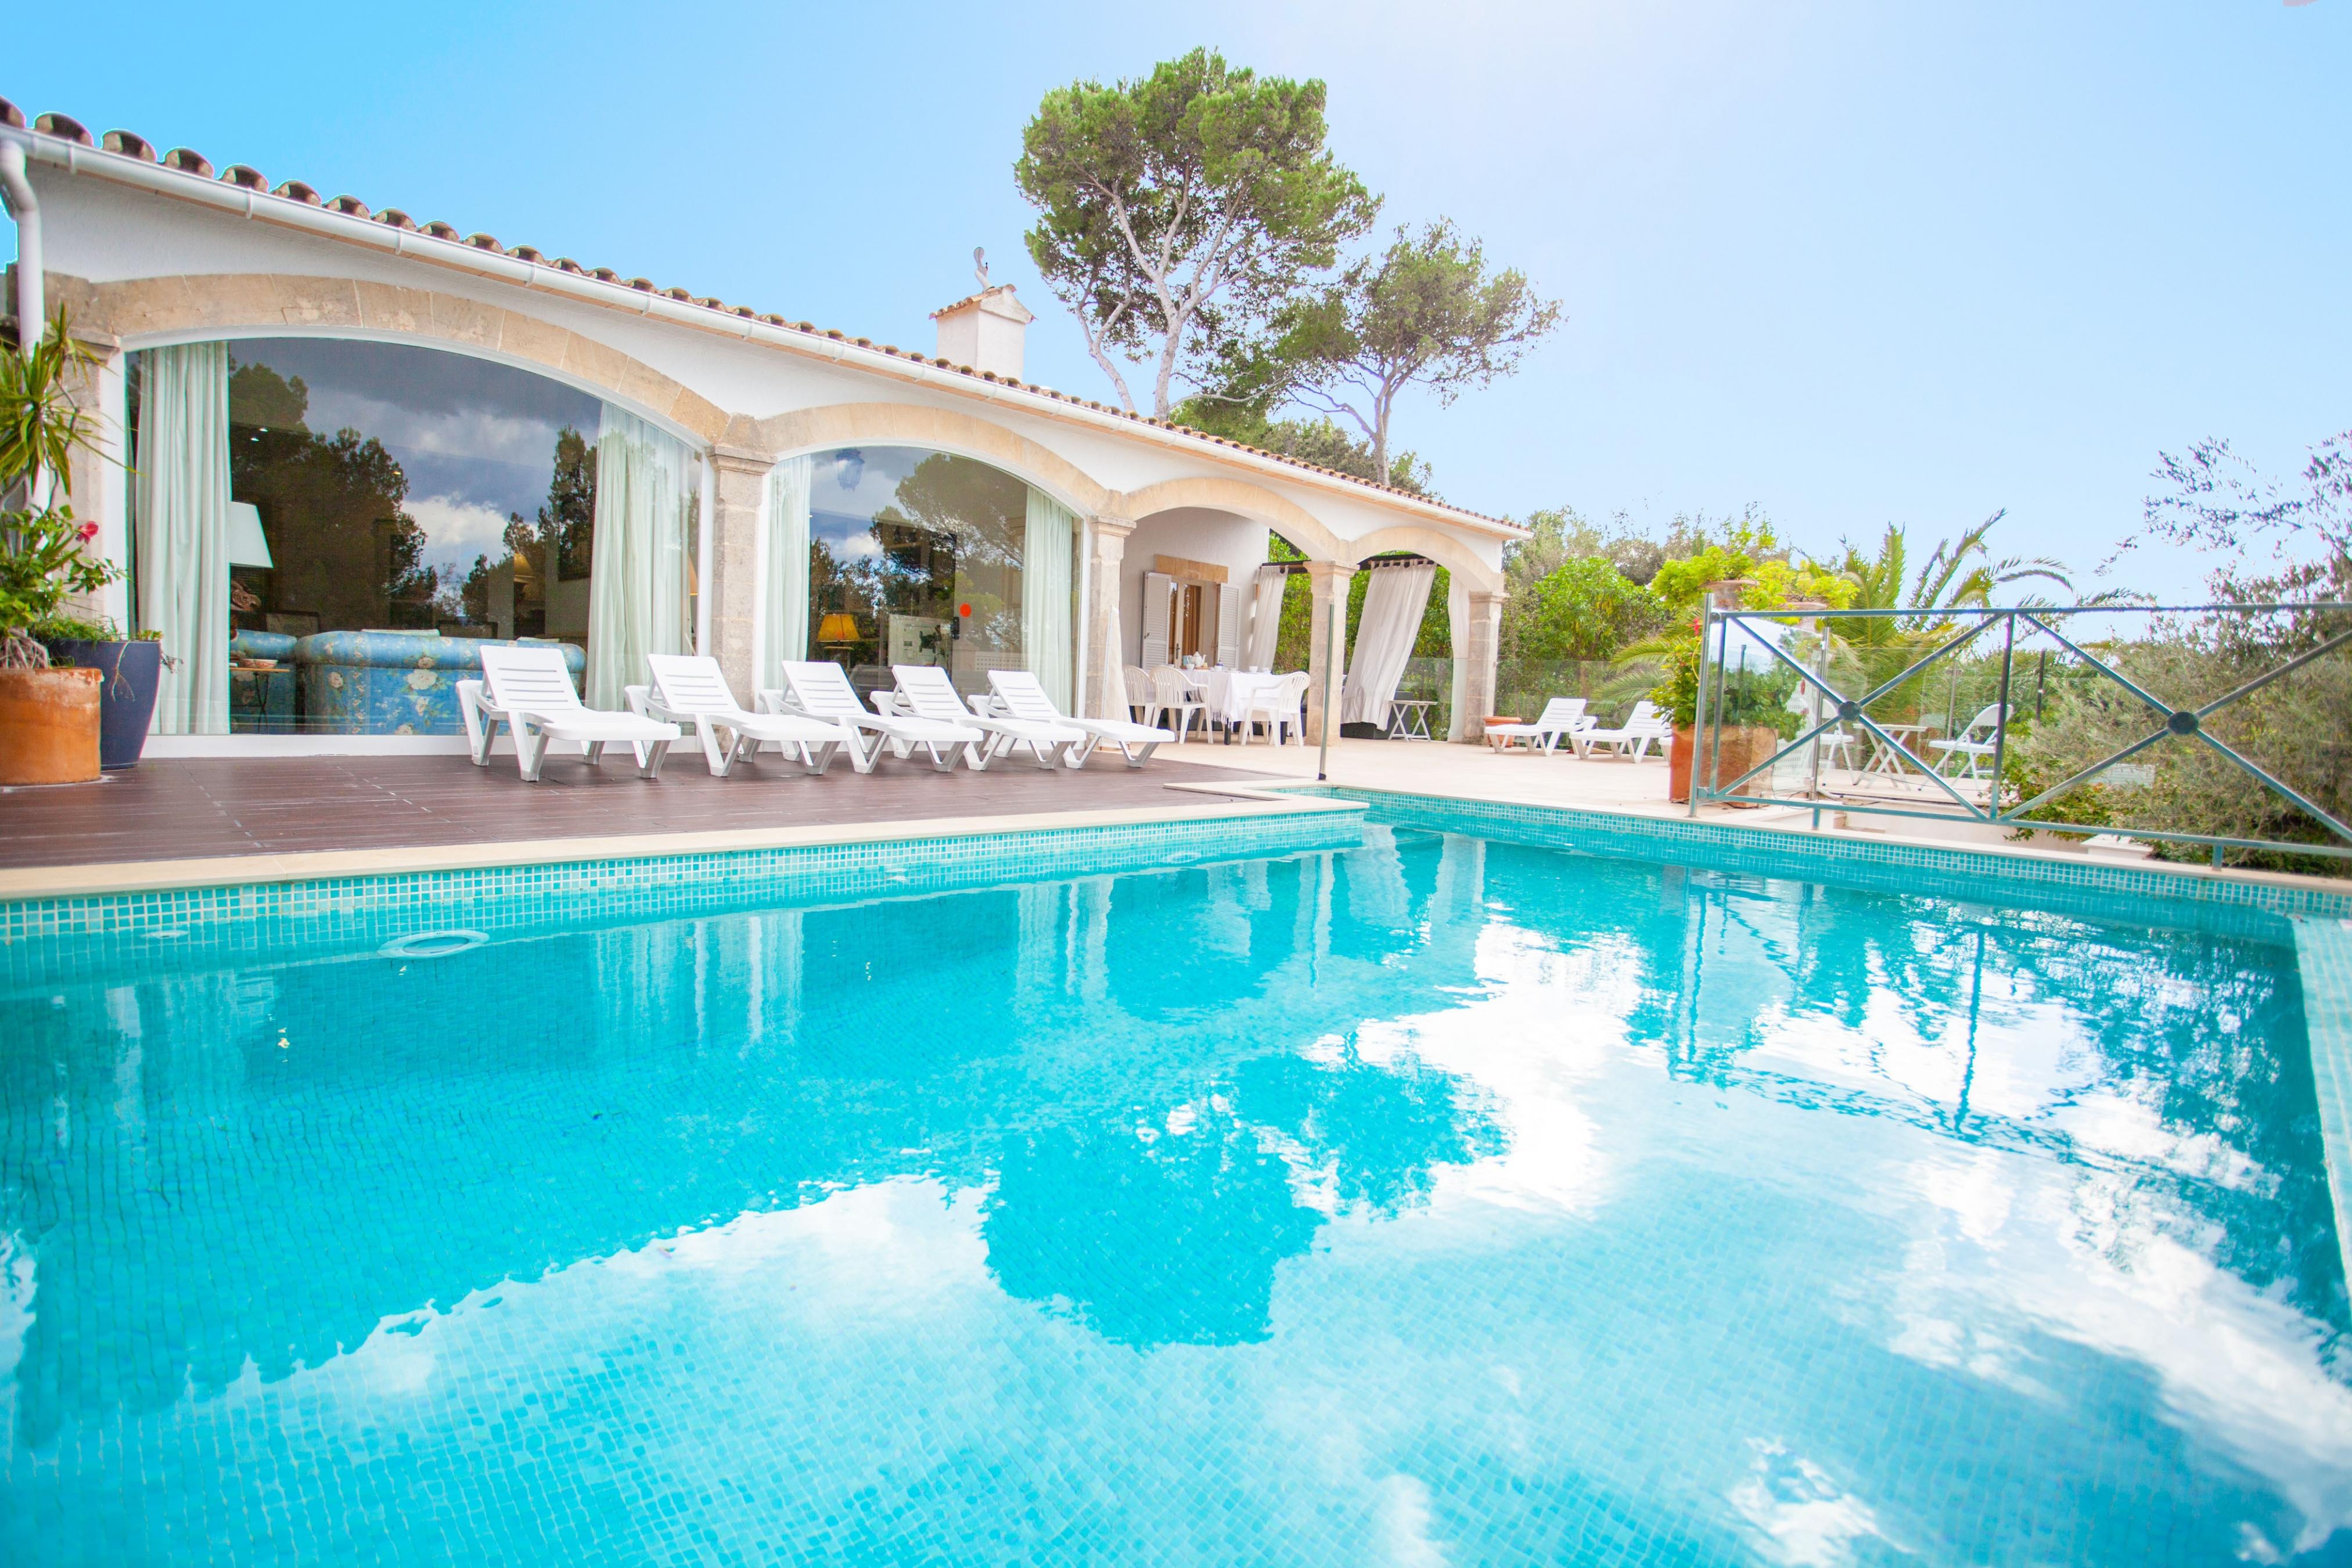 Property Image 1 - VILLA ROMANA BONAIRE - Villa with private pool in Bonaire (Alcúdia). Free WiFi